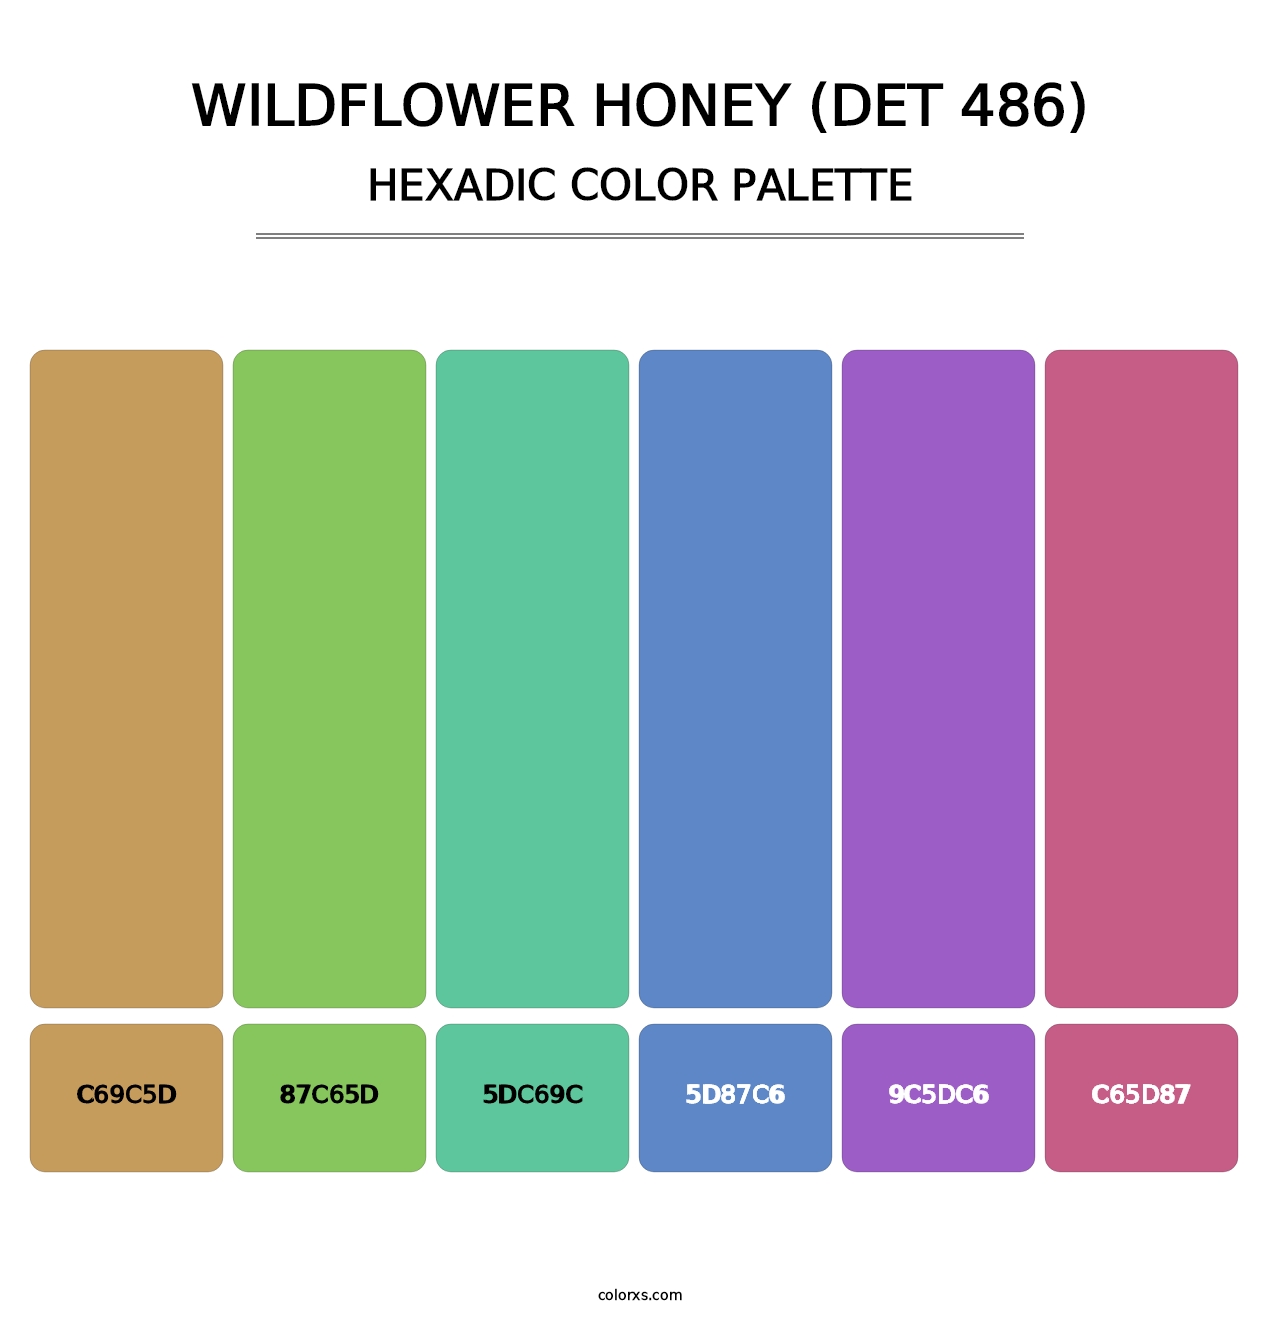 Wildflower Honey (DET 486) - Hexadic Color Palette